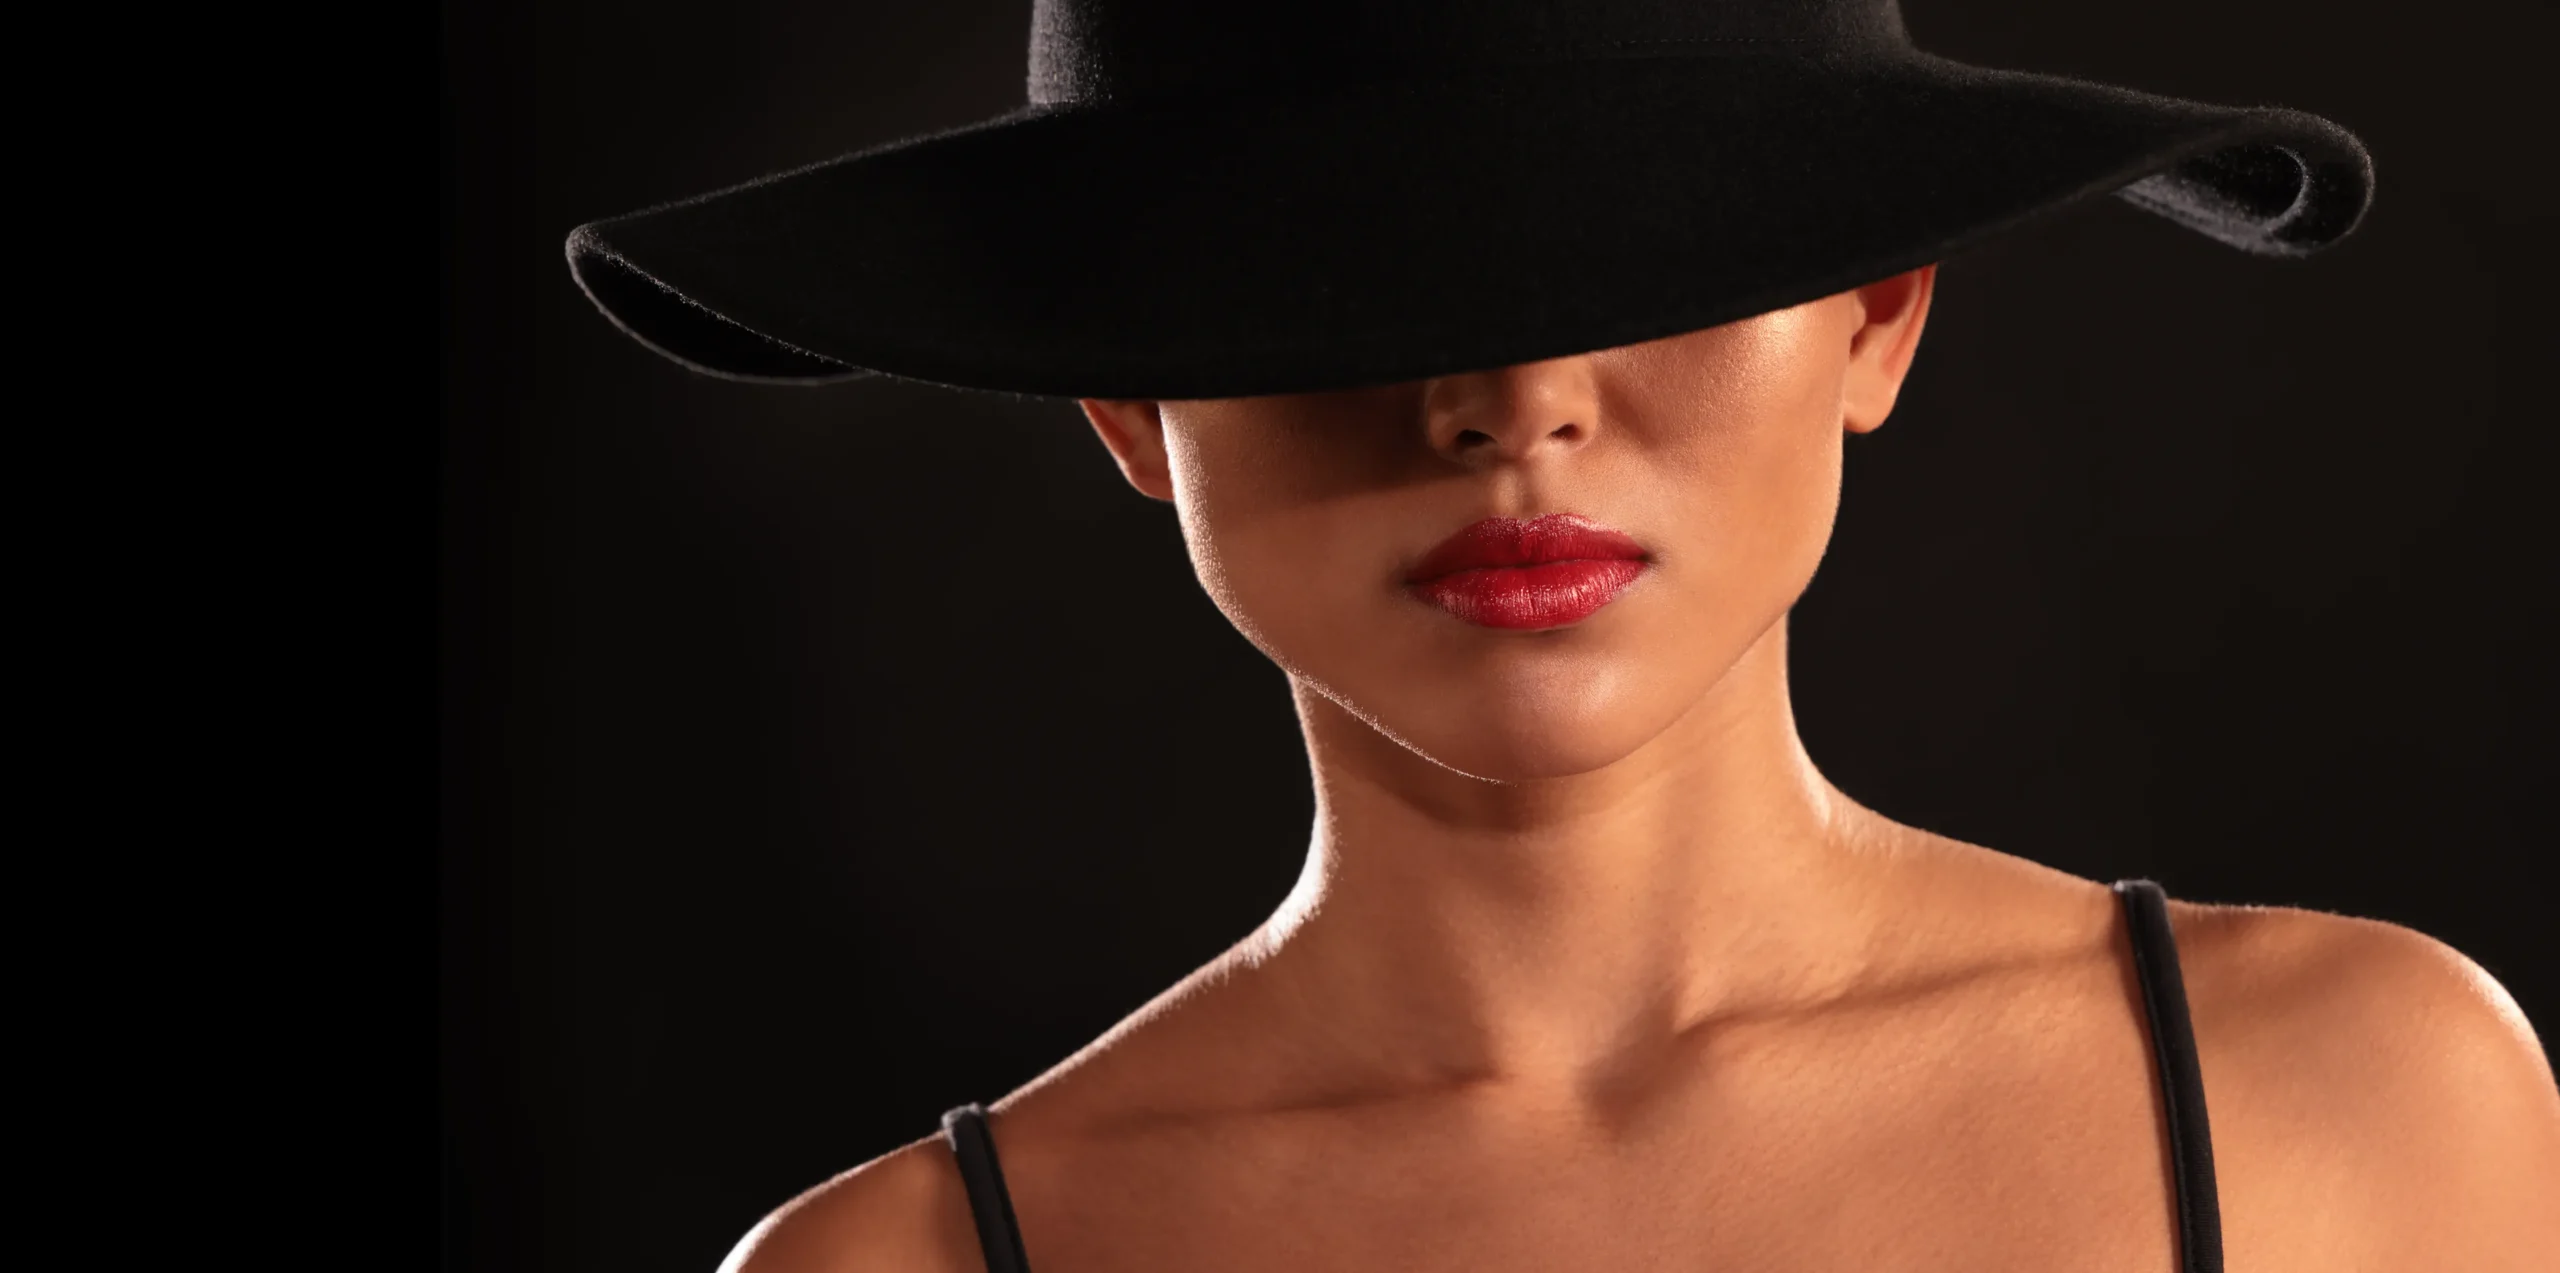 Headerbild Modefotografie Frau mit Hut